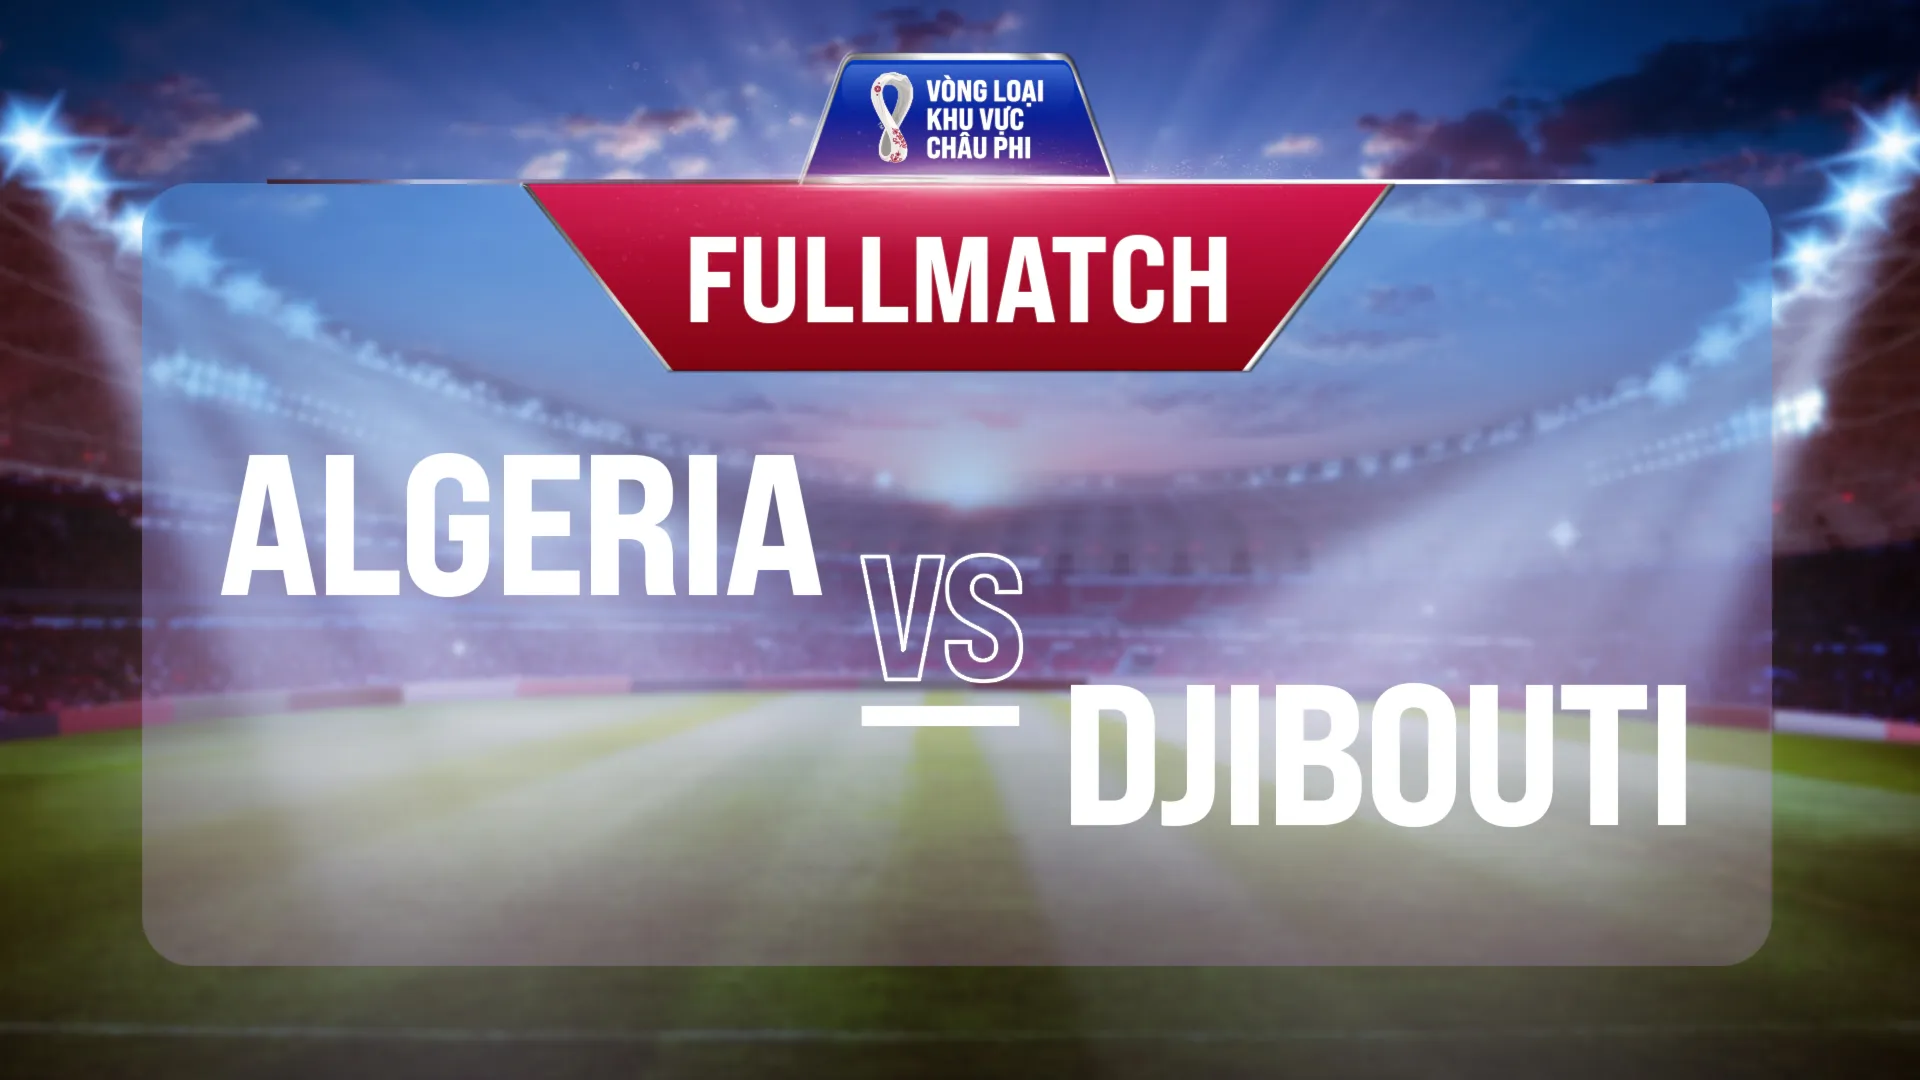 Full match Algeria - Djibouti (Vòng Loại World Cup 2022 - Khu vực châu Phi)